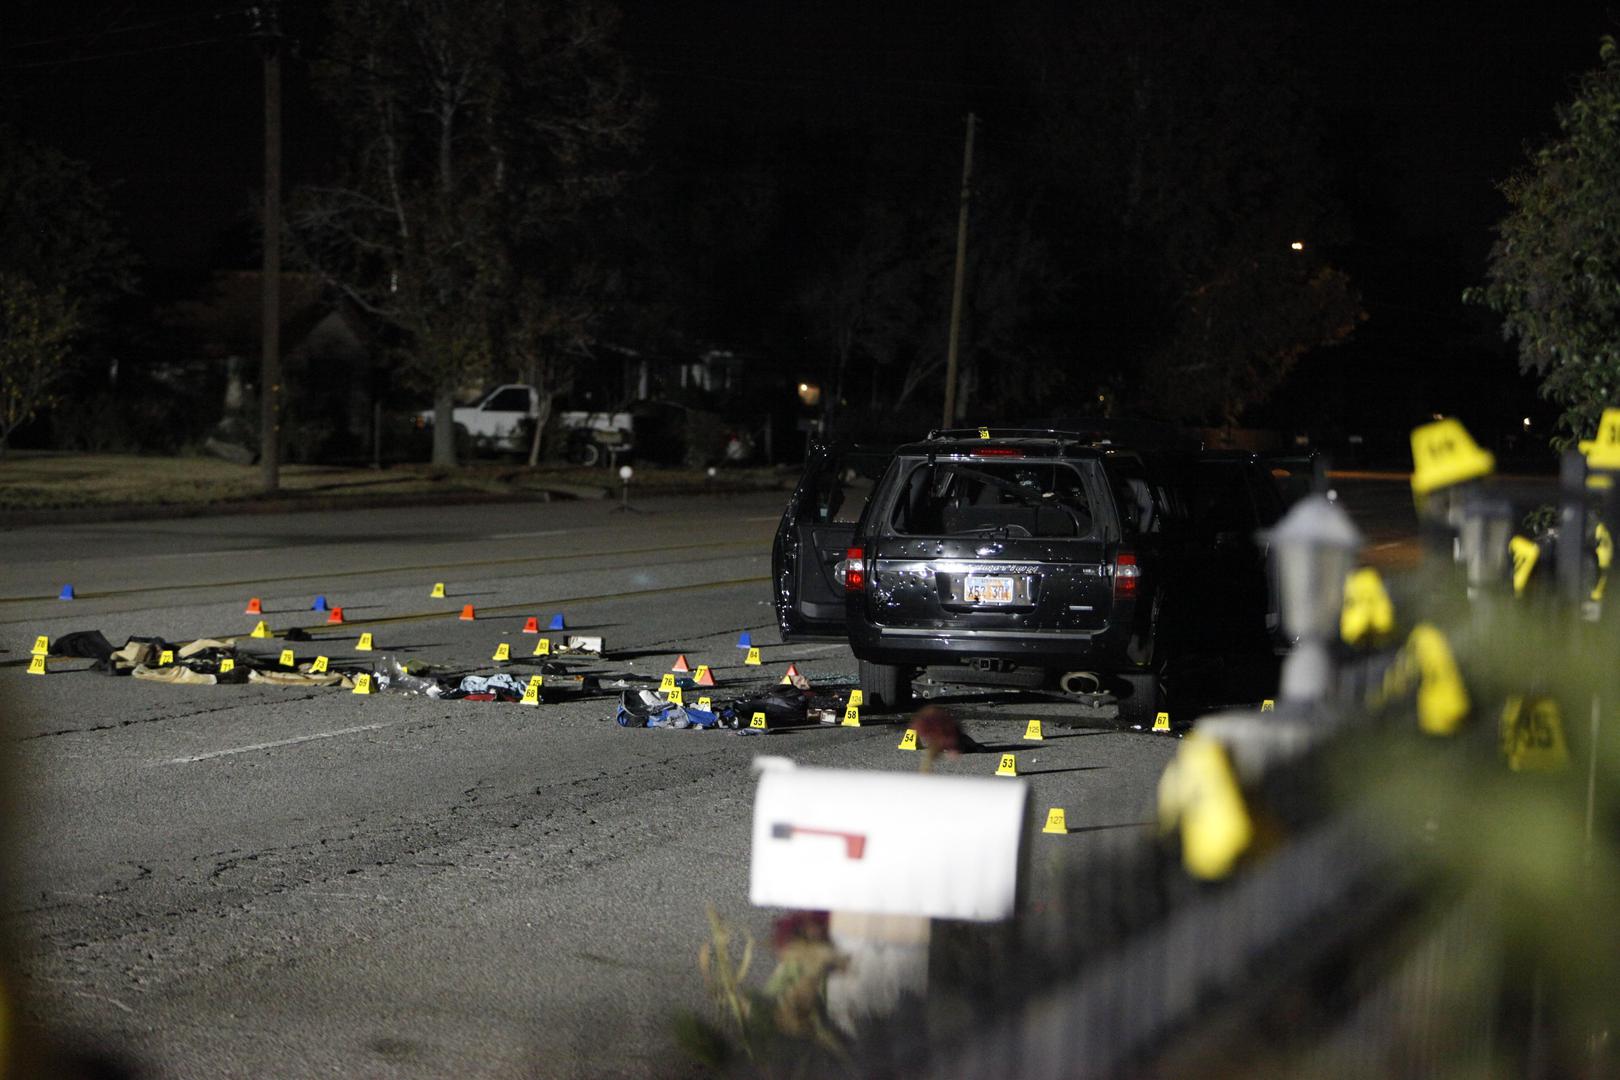 San Bernardino: 14 mrtvih – Par radikaliziranih islamista pakistanskog podrijetla otvorio je vatru tijekom božićne zabave 2. prosinca 2015. u San Bernardinu u Kaliforniji te ubio 14 ljudi i ranio 22. Syed Farook i Tashfeen Malik su ubijeni.